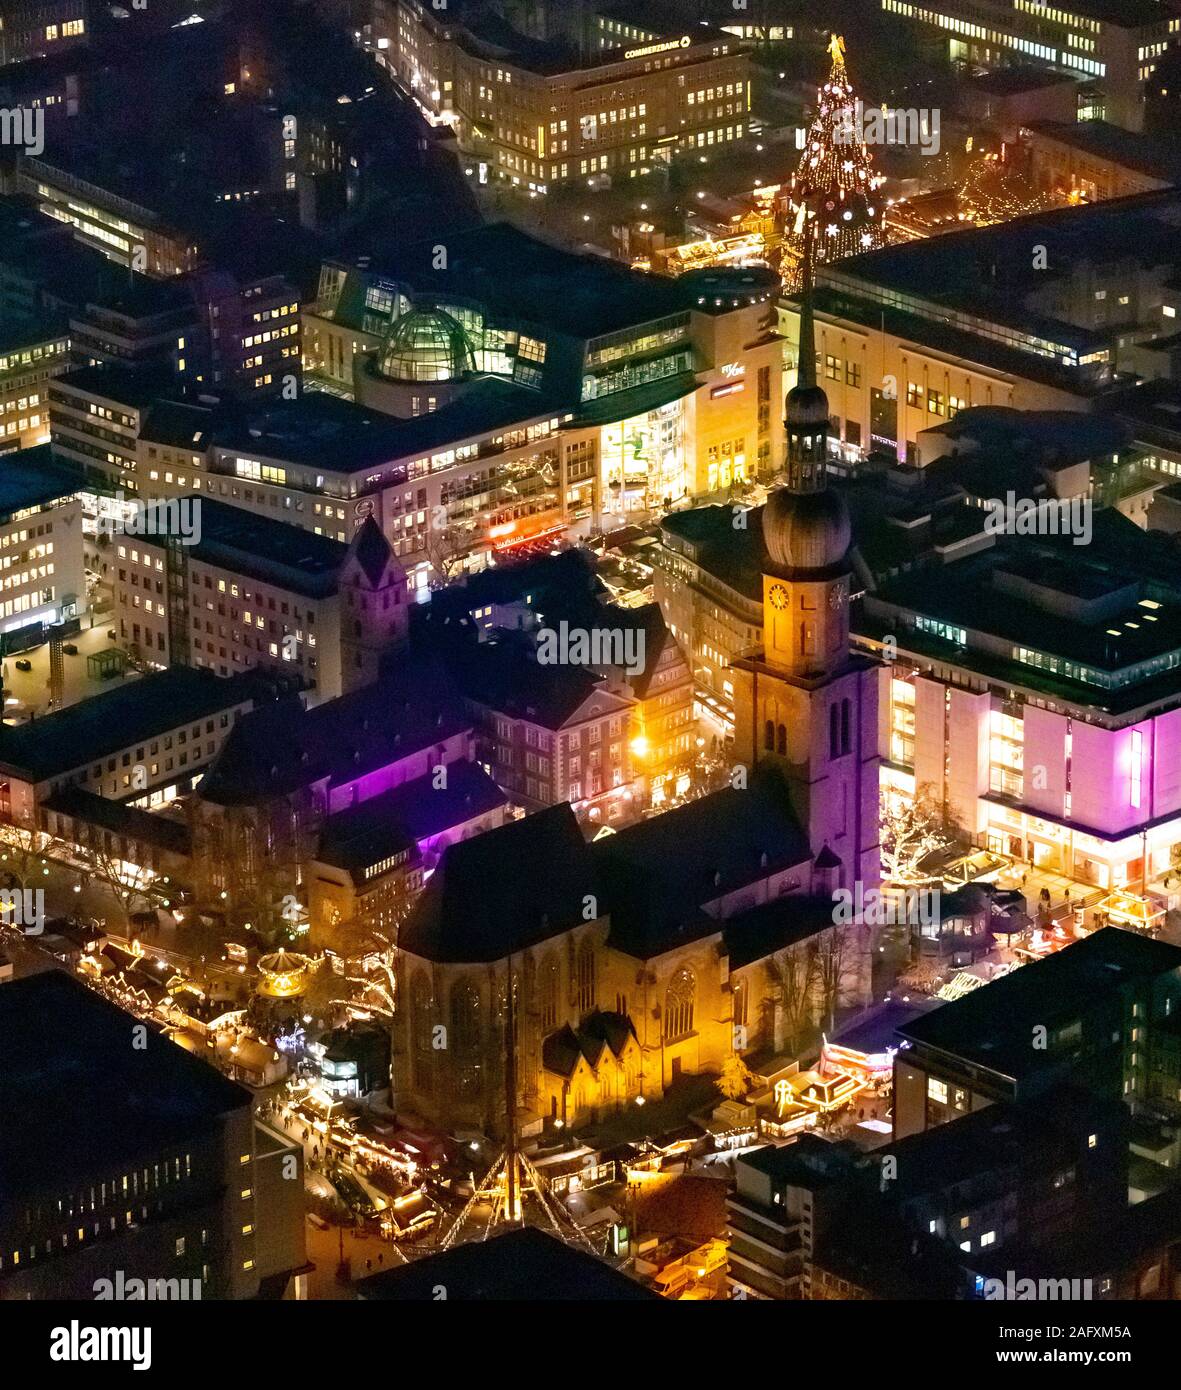 Foto aerea, mercato di Natale di Dortmund tra Reinoldikirche e Hansamarkt, albero di Natale più grande del mondo, Dortmund, la zona della Ruhr, Renania settentrionale-W Foto Stock